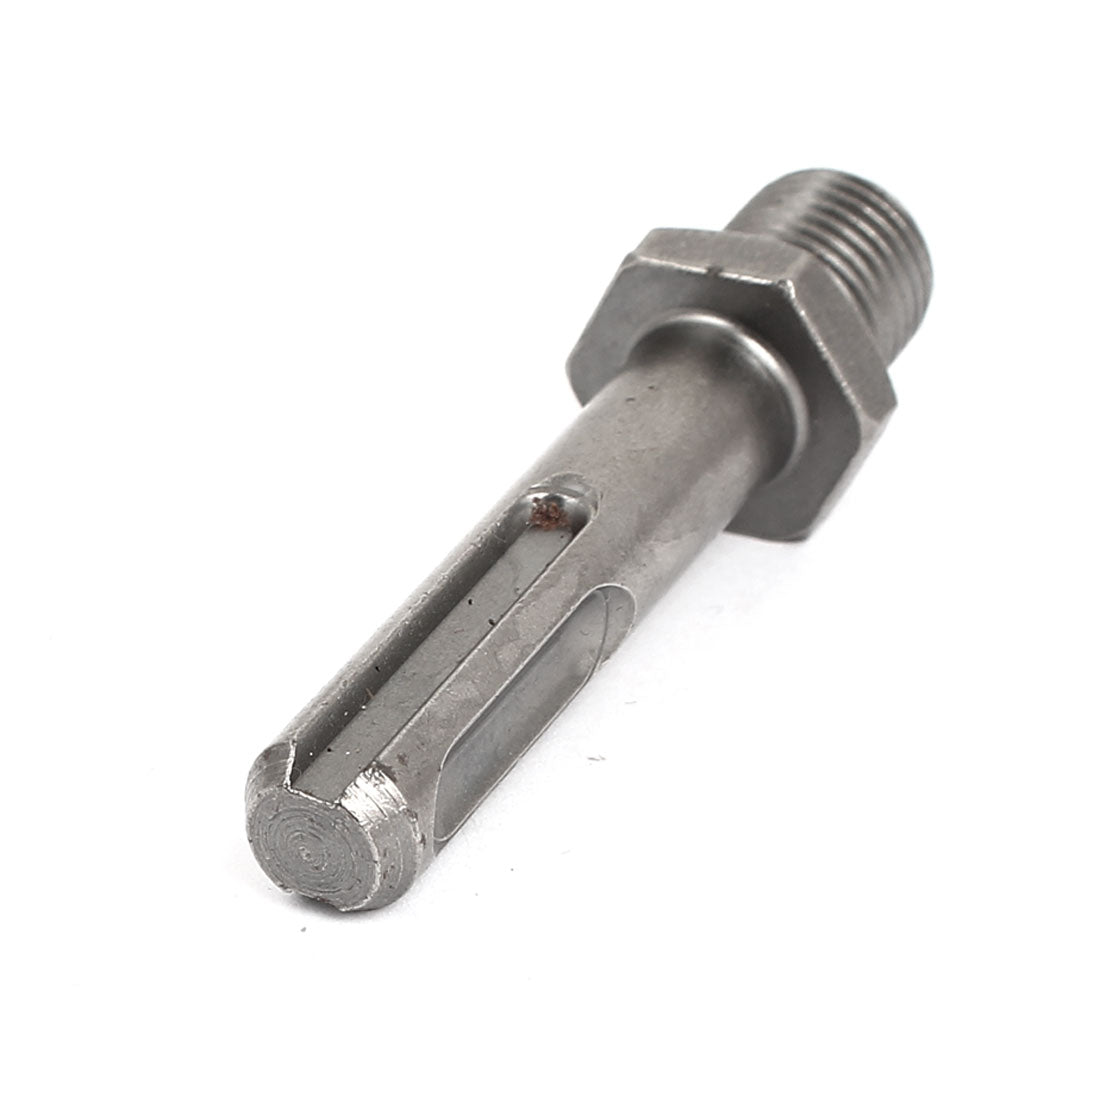 uxcell Uxcell 1/4BSP 12mm Male Thread  Shank Hammer Drill Chuck Adapter Converter